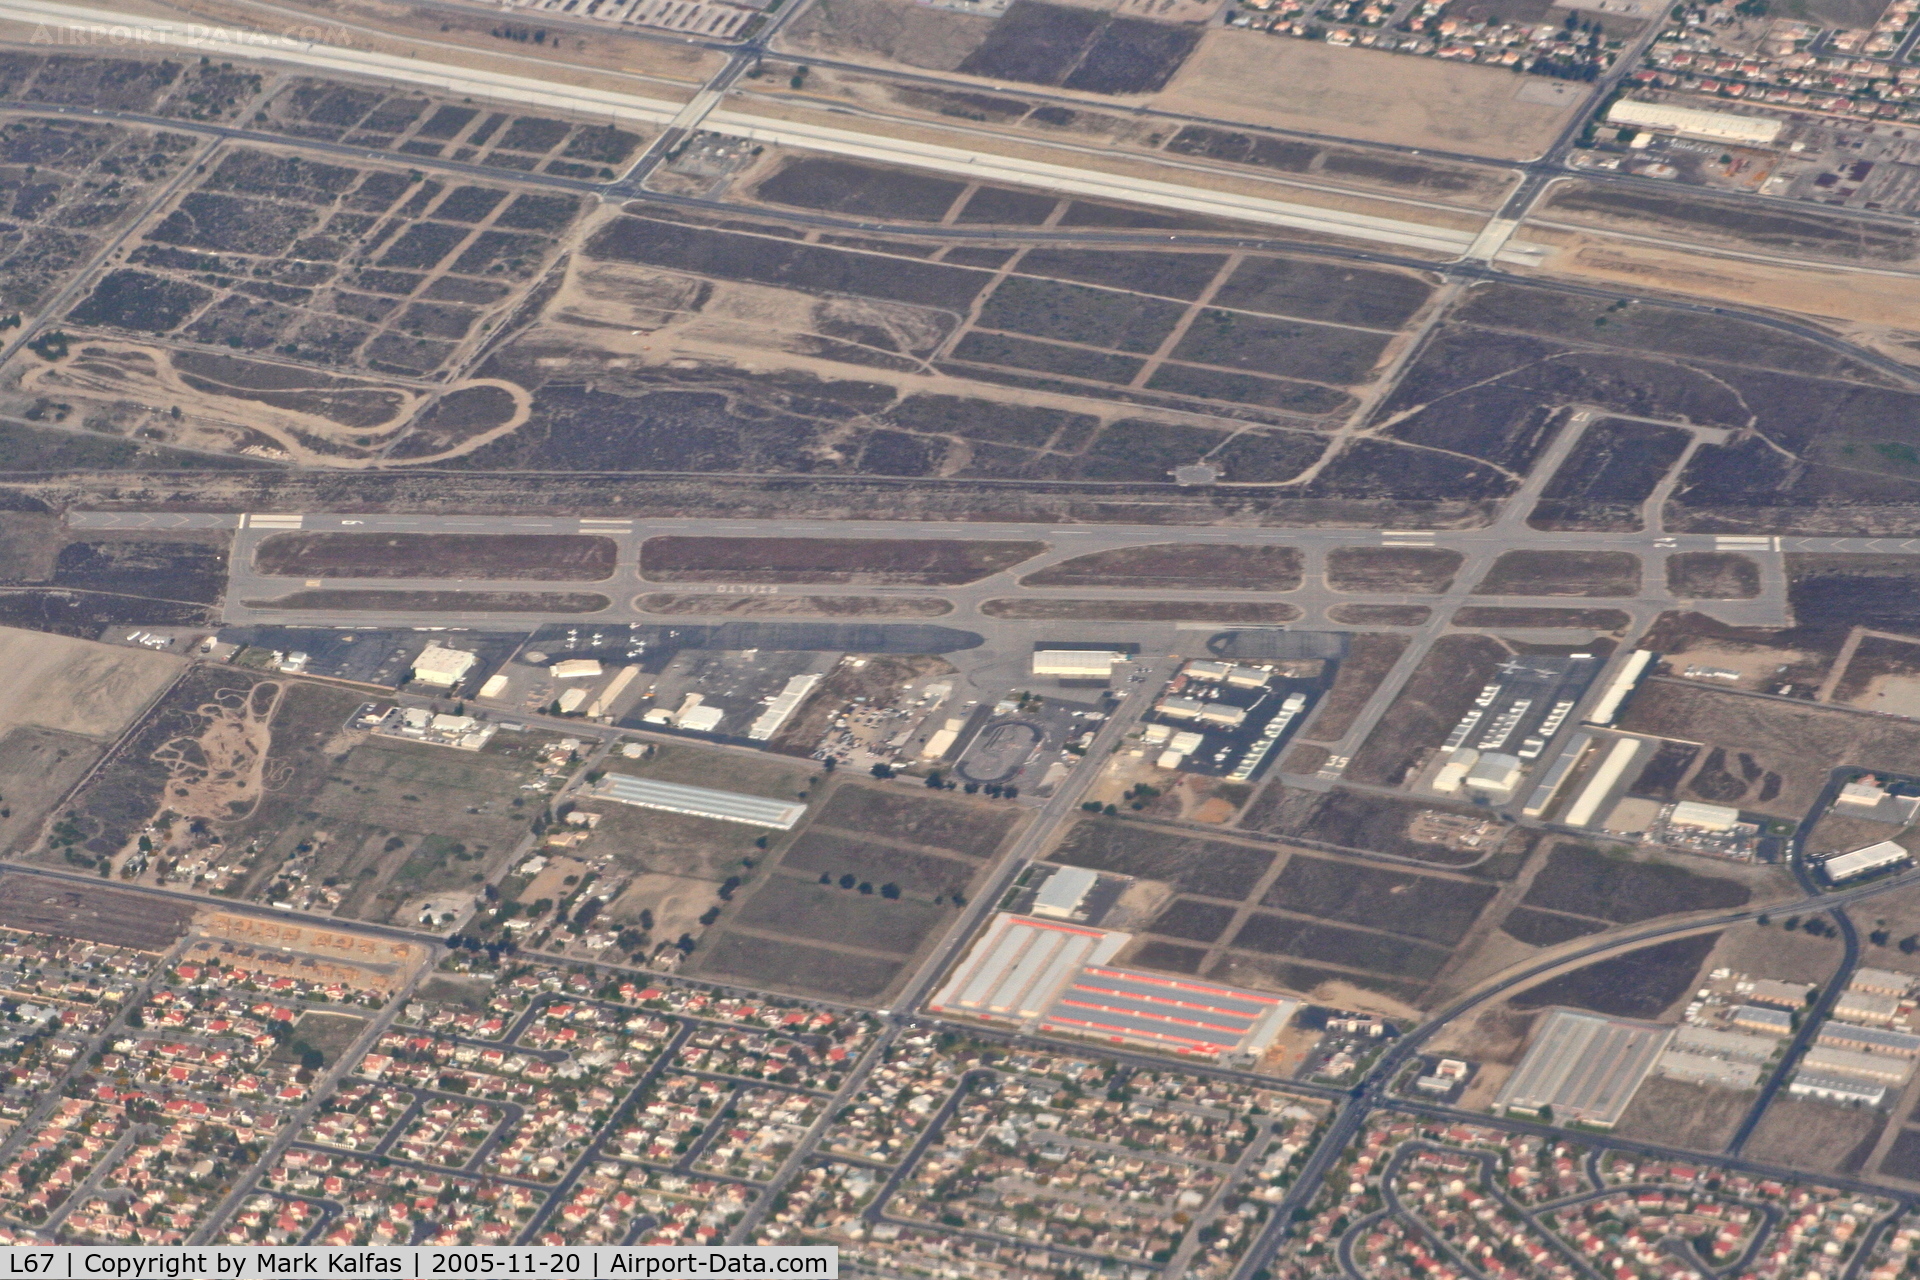 Rialto Municipal /miro Fld/ Airport (L67) - Rialto Municipal Airport, Rialto, CA as seen descending 
through 10,000' on an approach into KLAX.